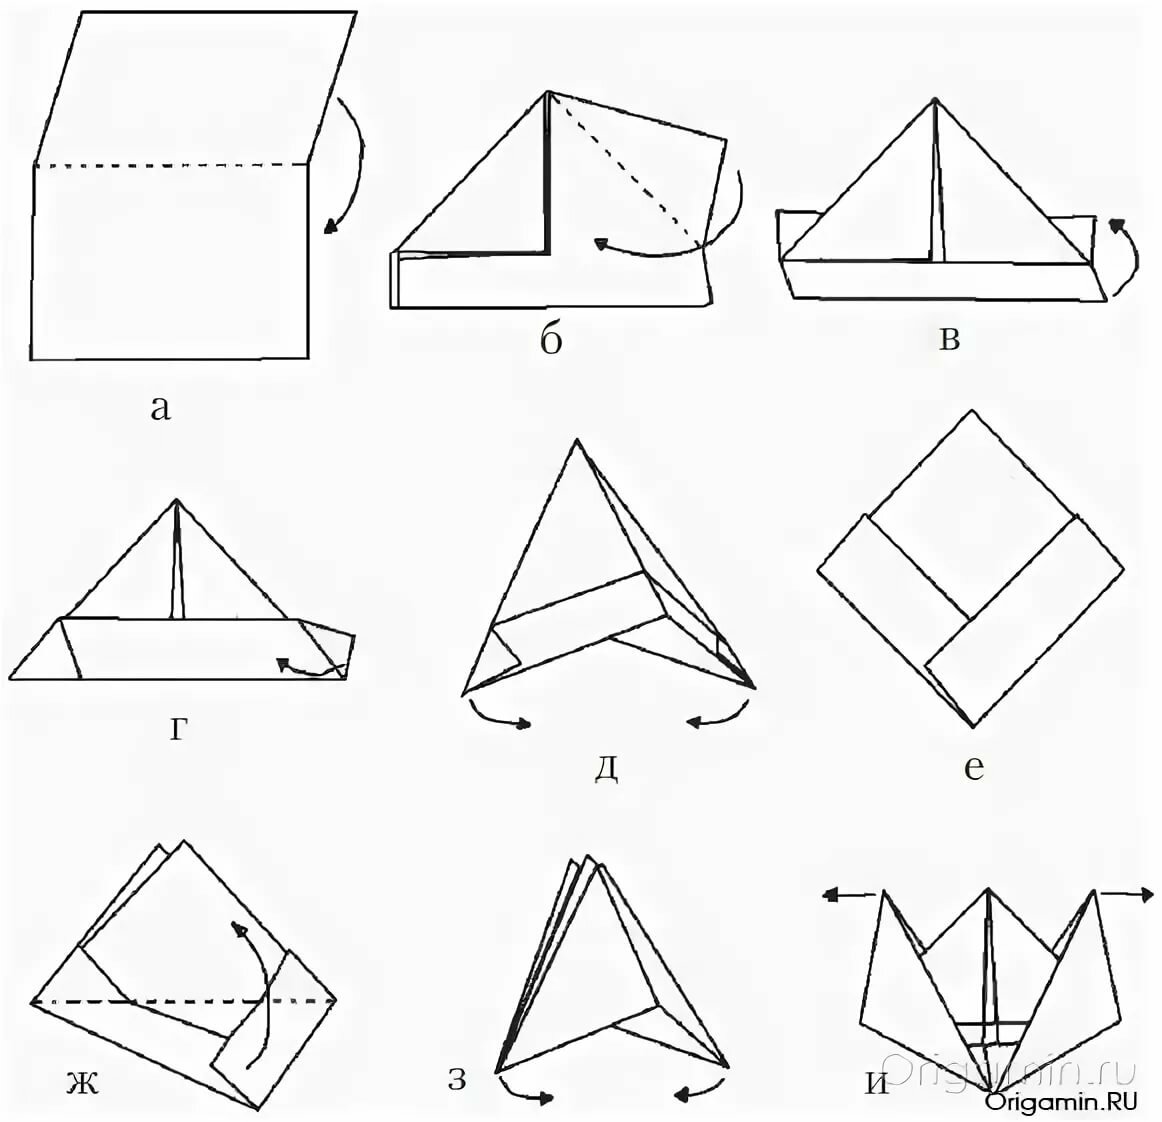 Как сделать пилотку из бумаги своими руками: стюардессы - схема и пошаговая инструкция , видео, пилотка оригами